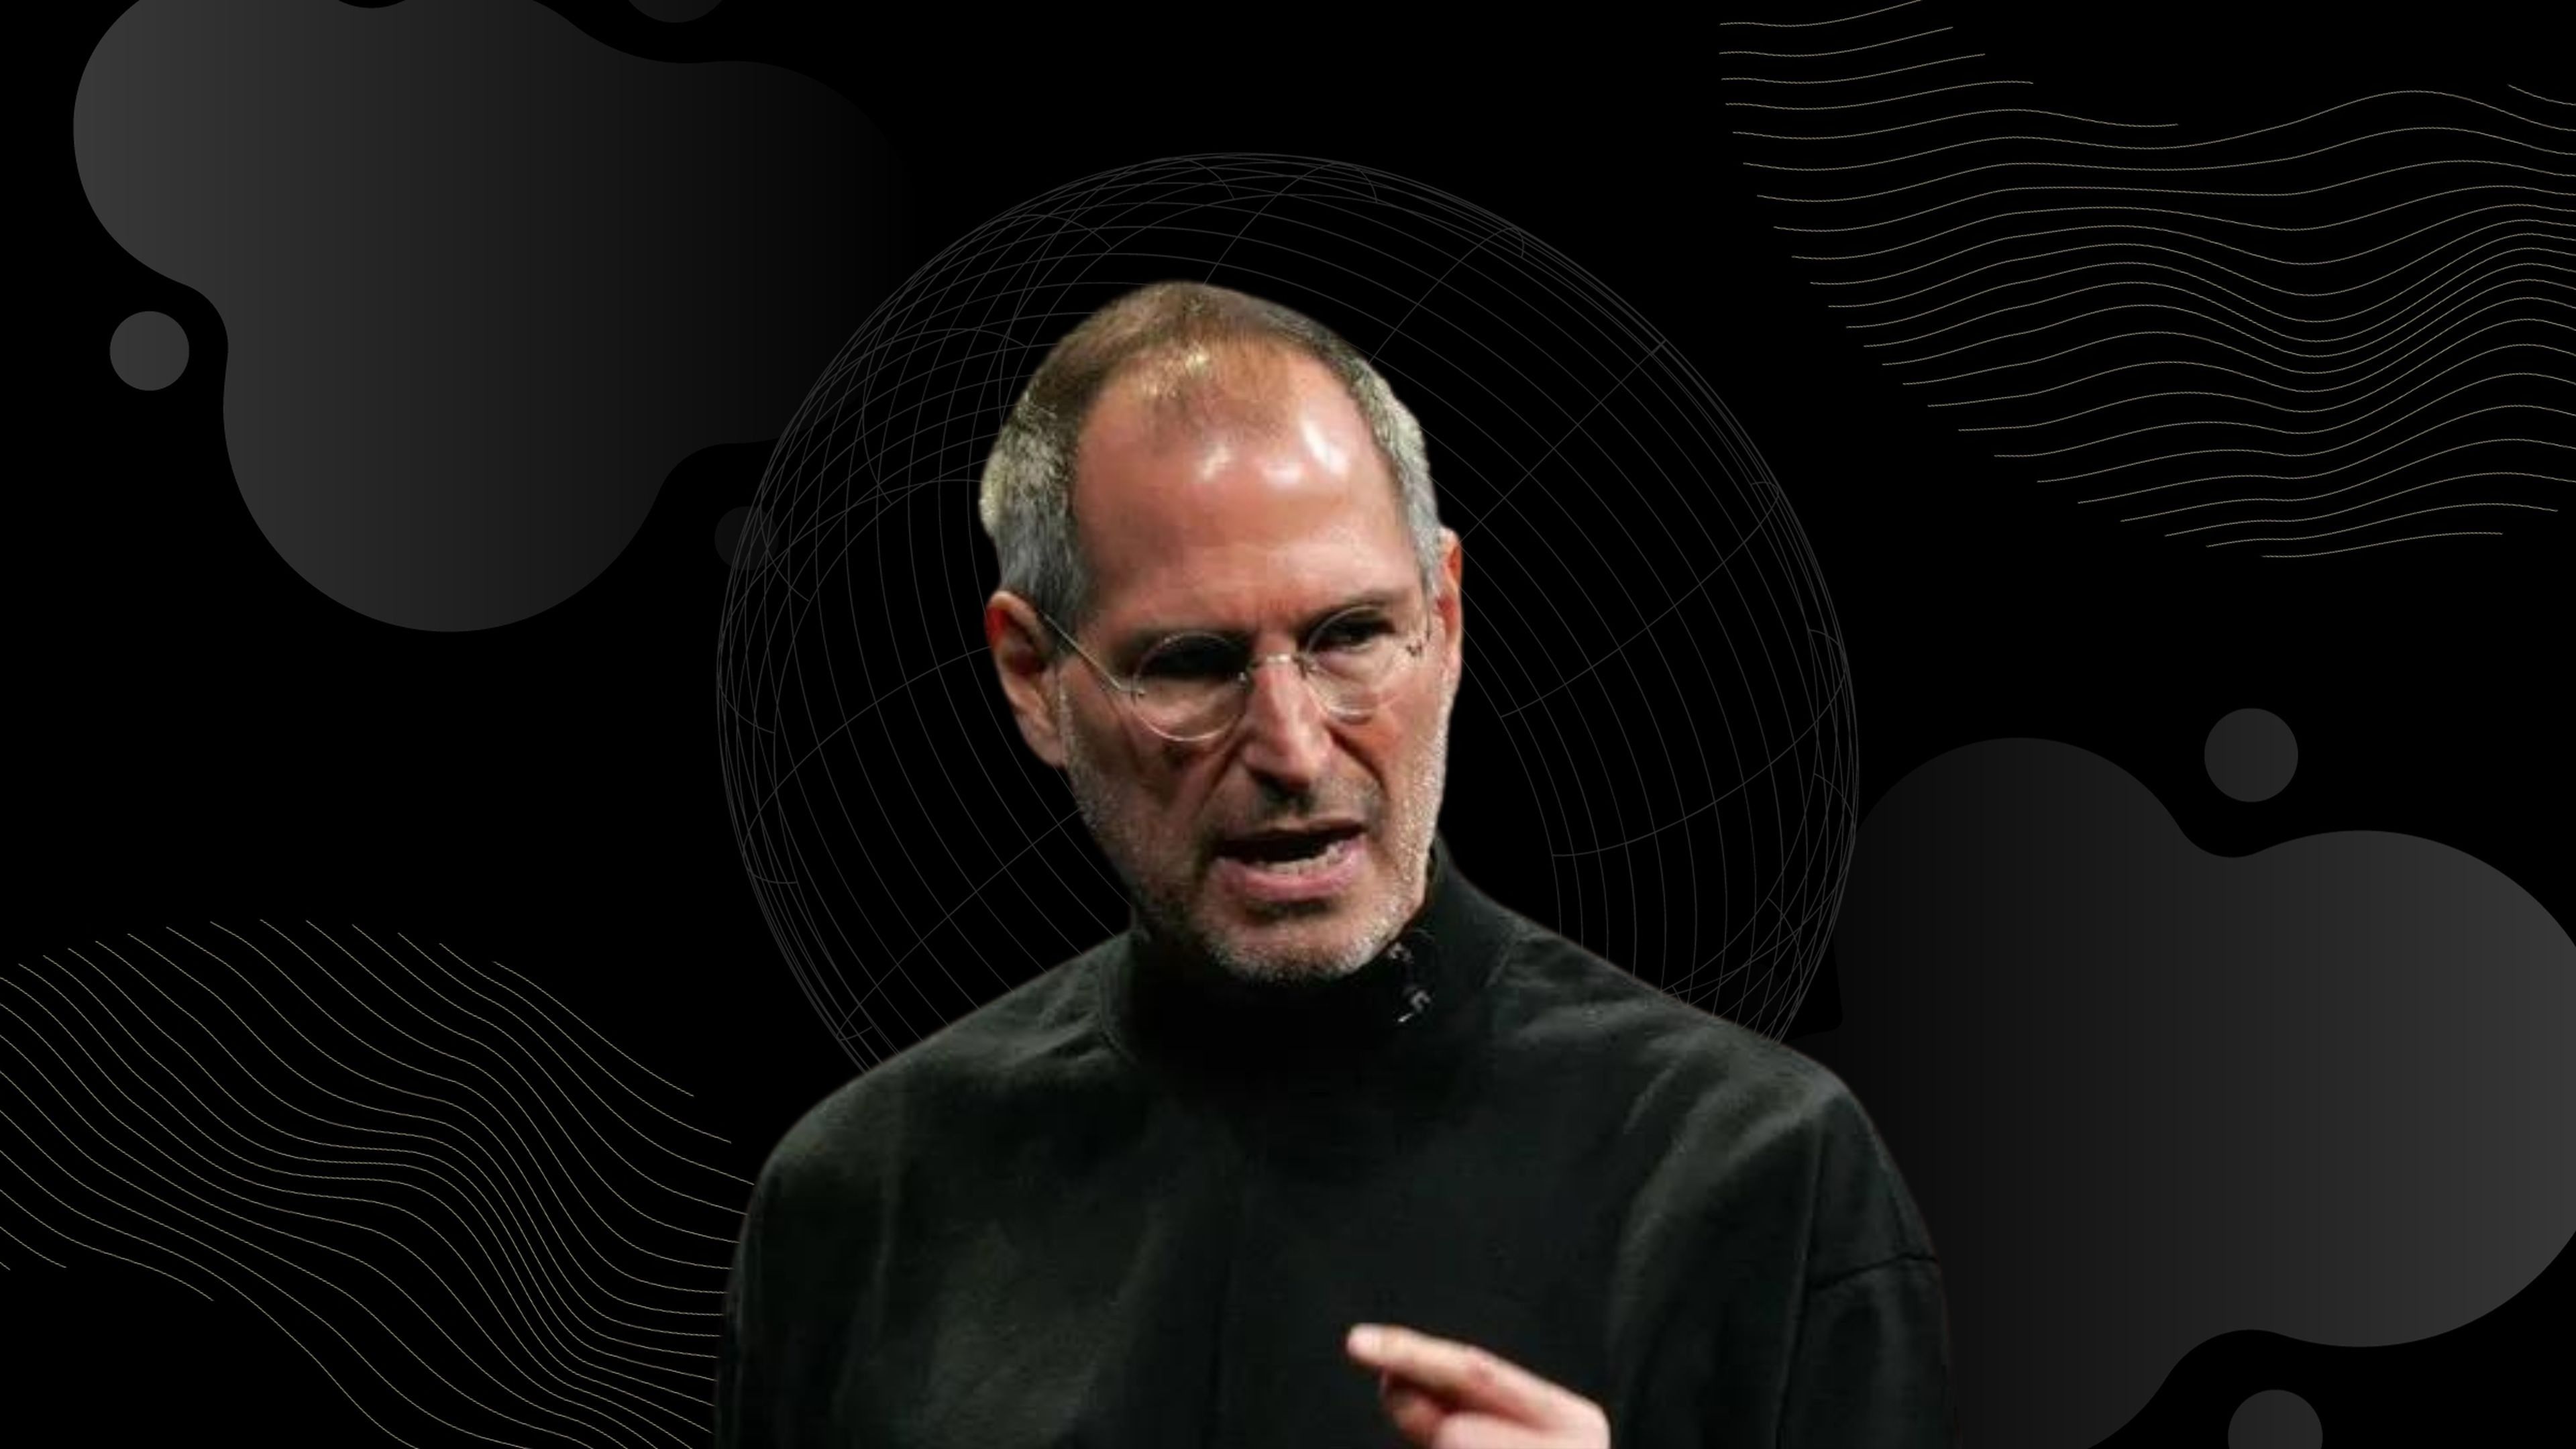 Cómo responder a un insulto de forma impecable, al estilo Steve Jobs